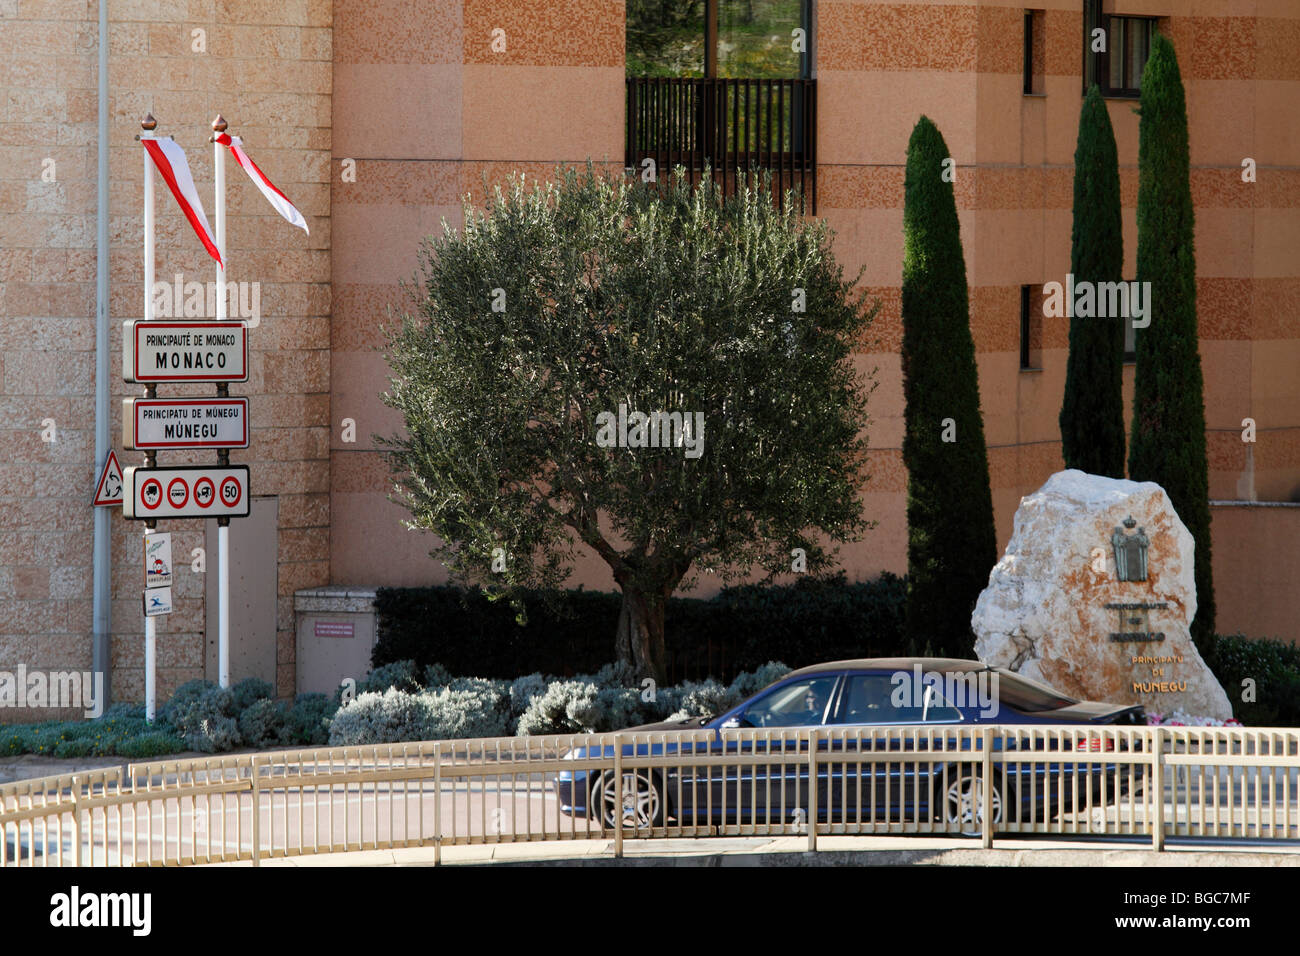 Grenze zwischen Frankreich und Monaco, Roquebrune Cap Martin, monegassischen Nationalflaggen, Mercedes Limousine, Fassade eines Hochhauses am Stockfoto